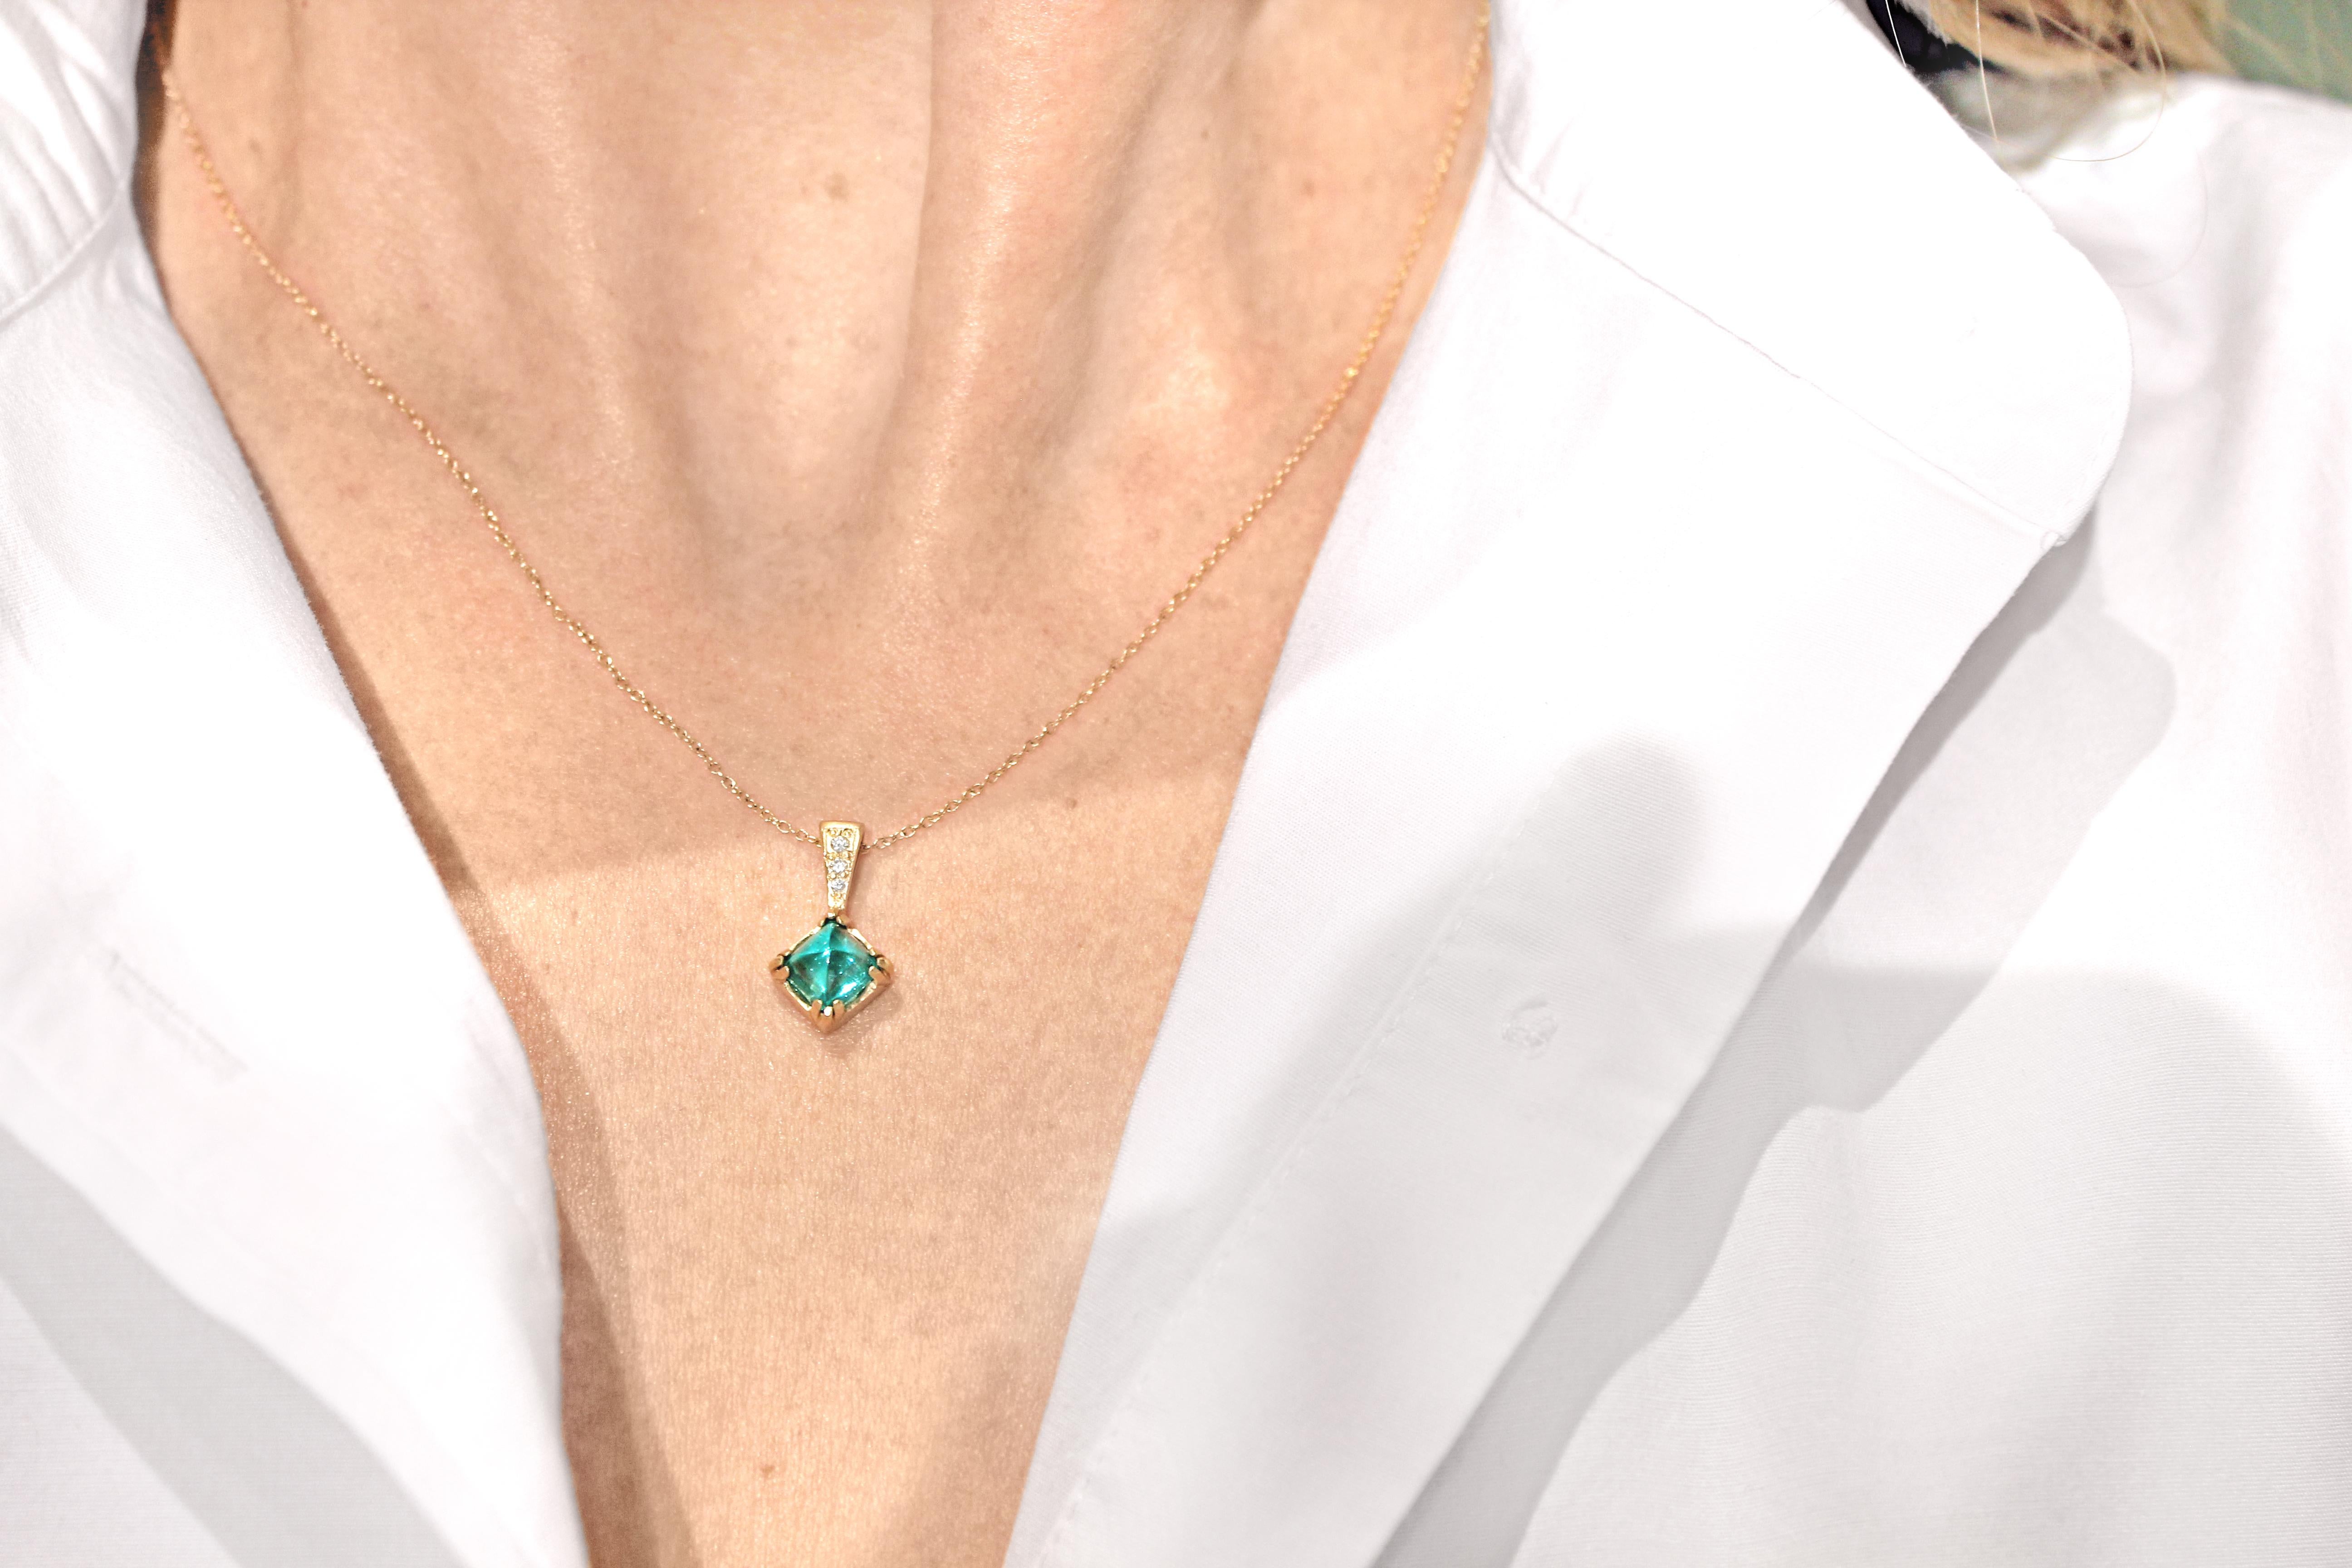 Einzigartige Vintage-Smaragd-Halskette, handgefertigt aus mattiertem 14-karätigem Gelbgold, mit einem spektakulären blaugrünen, völlig natürlichen und unerhitzten Vintage-Smaragd von 1,37 Karat, akzentuiert mit 0,025 Karat runder weißer Diamanten im